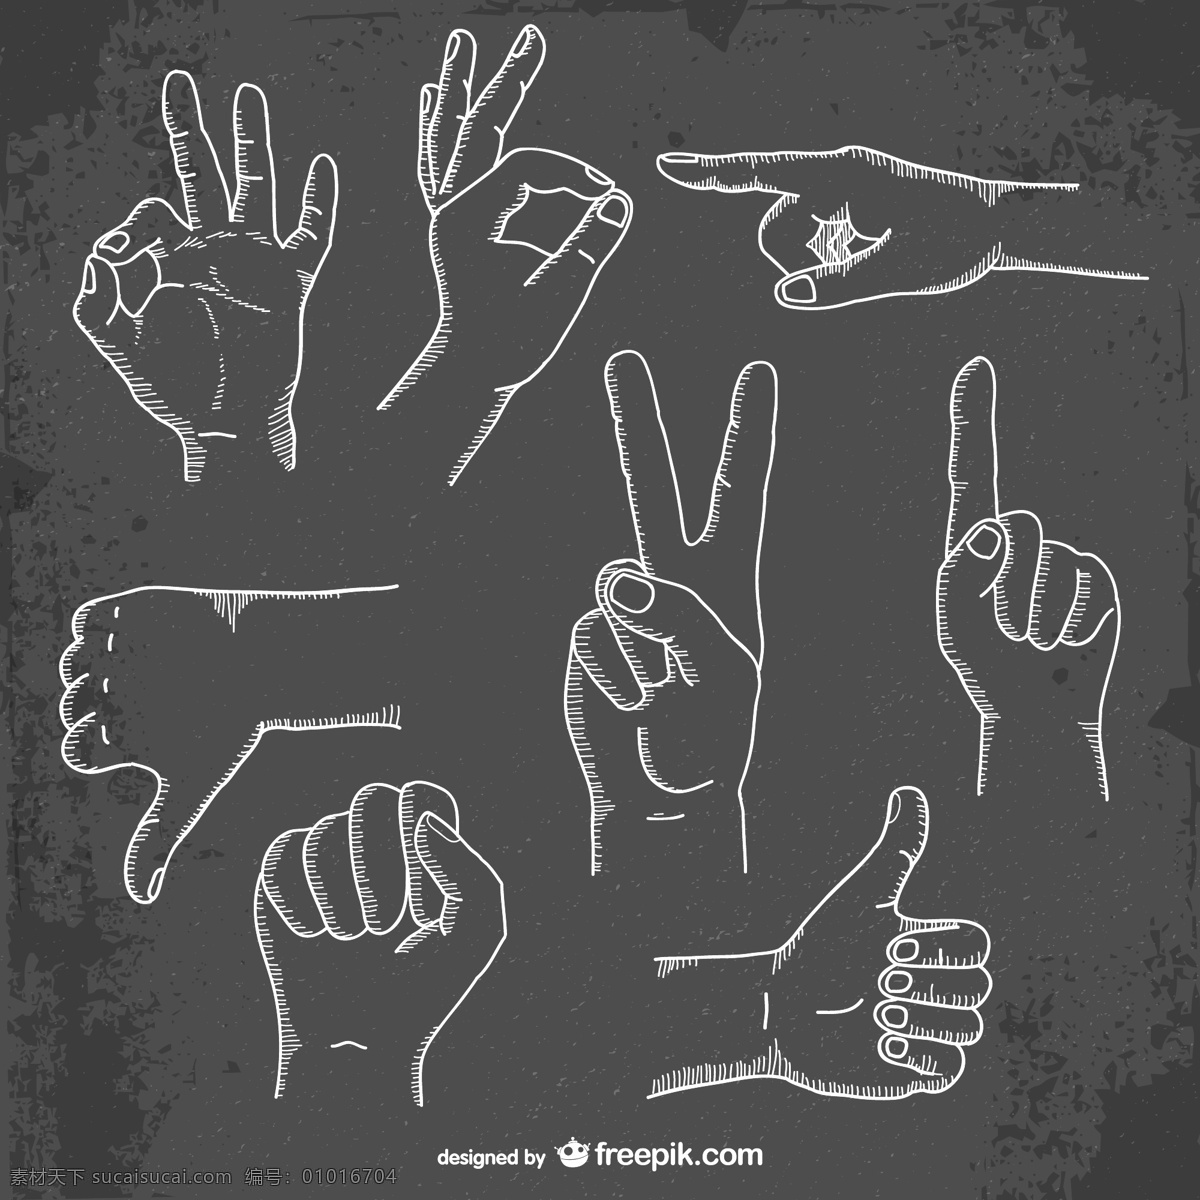 手绘手势 手势 手型 手部特写 手势喻意 手势创意 人物 手势合集 手势图片 手的表情 各种手势 动作 生活素材 线条手势 手绘手 线条手 人物描绘